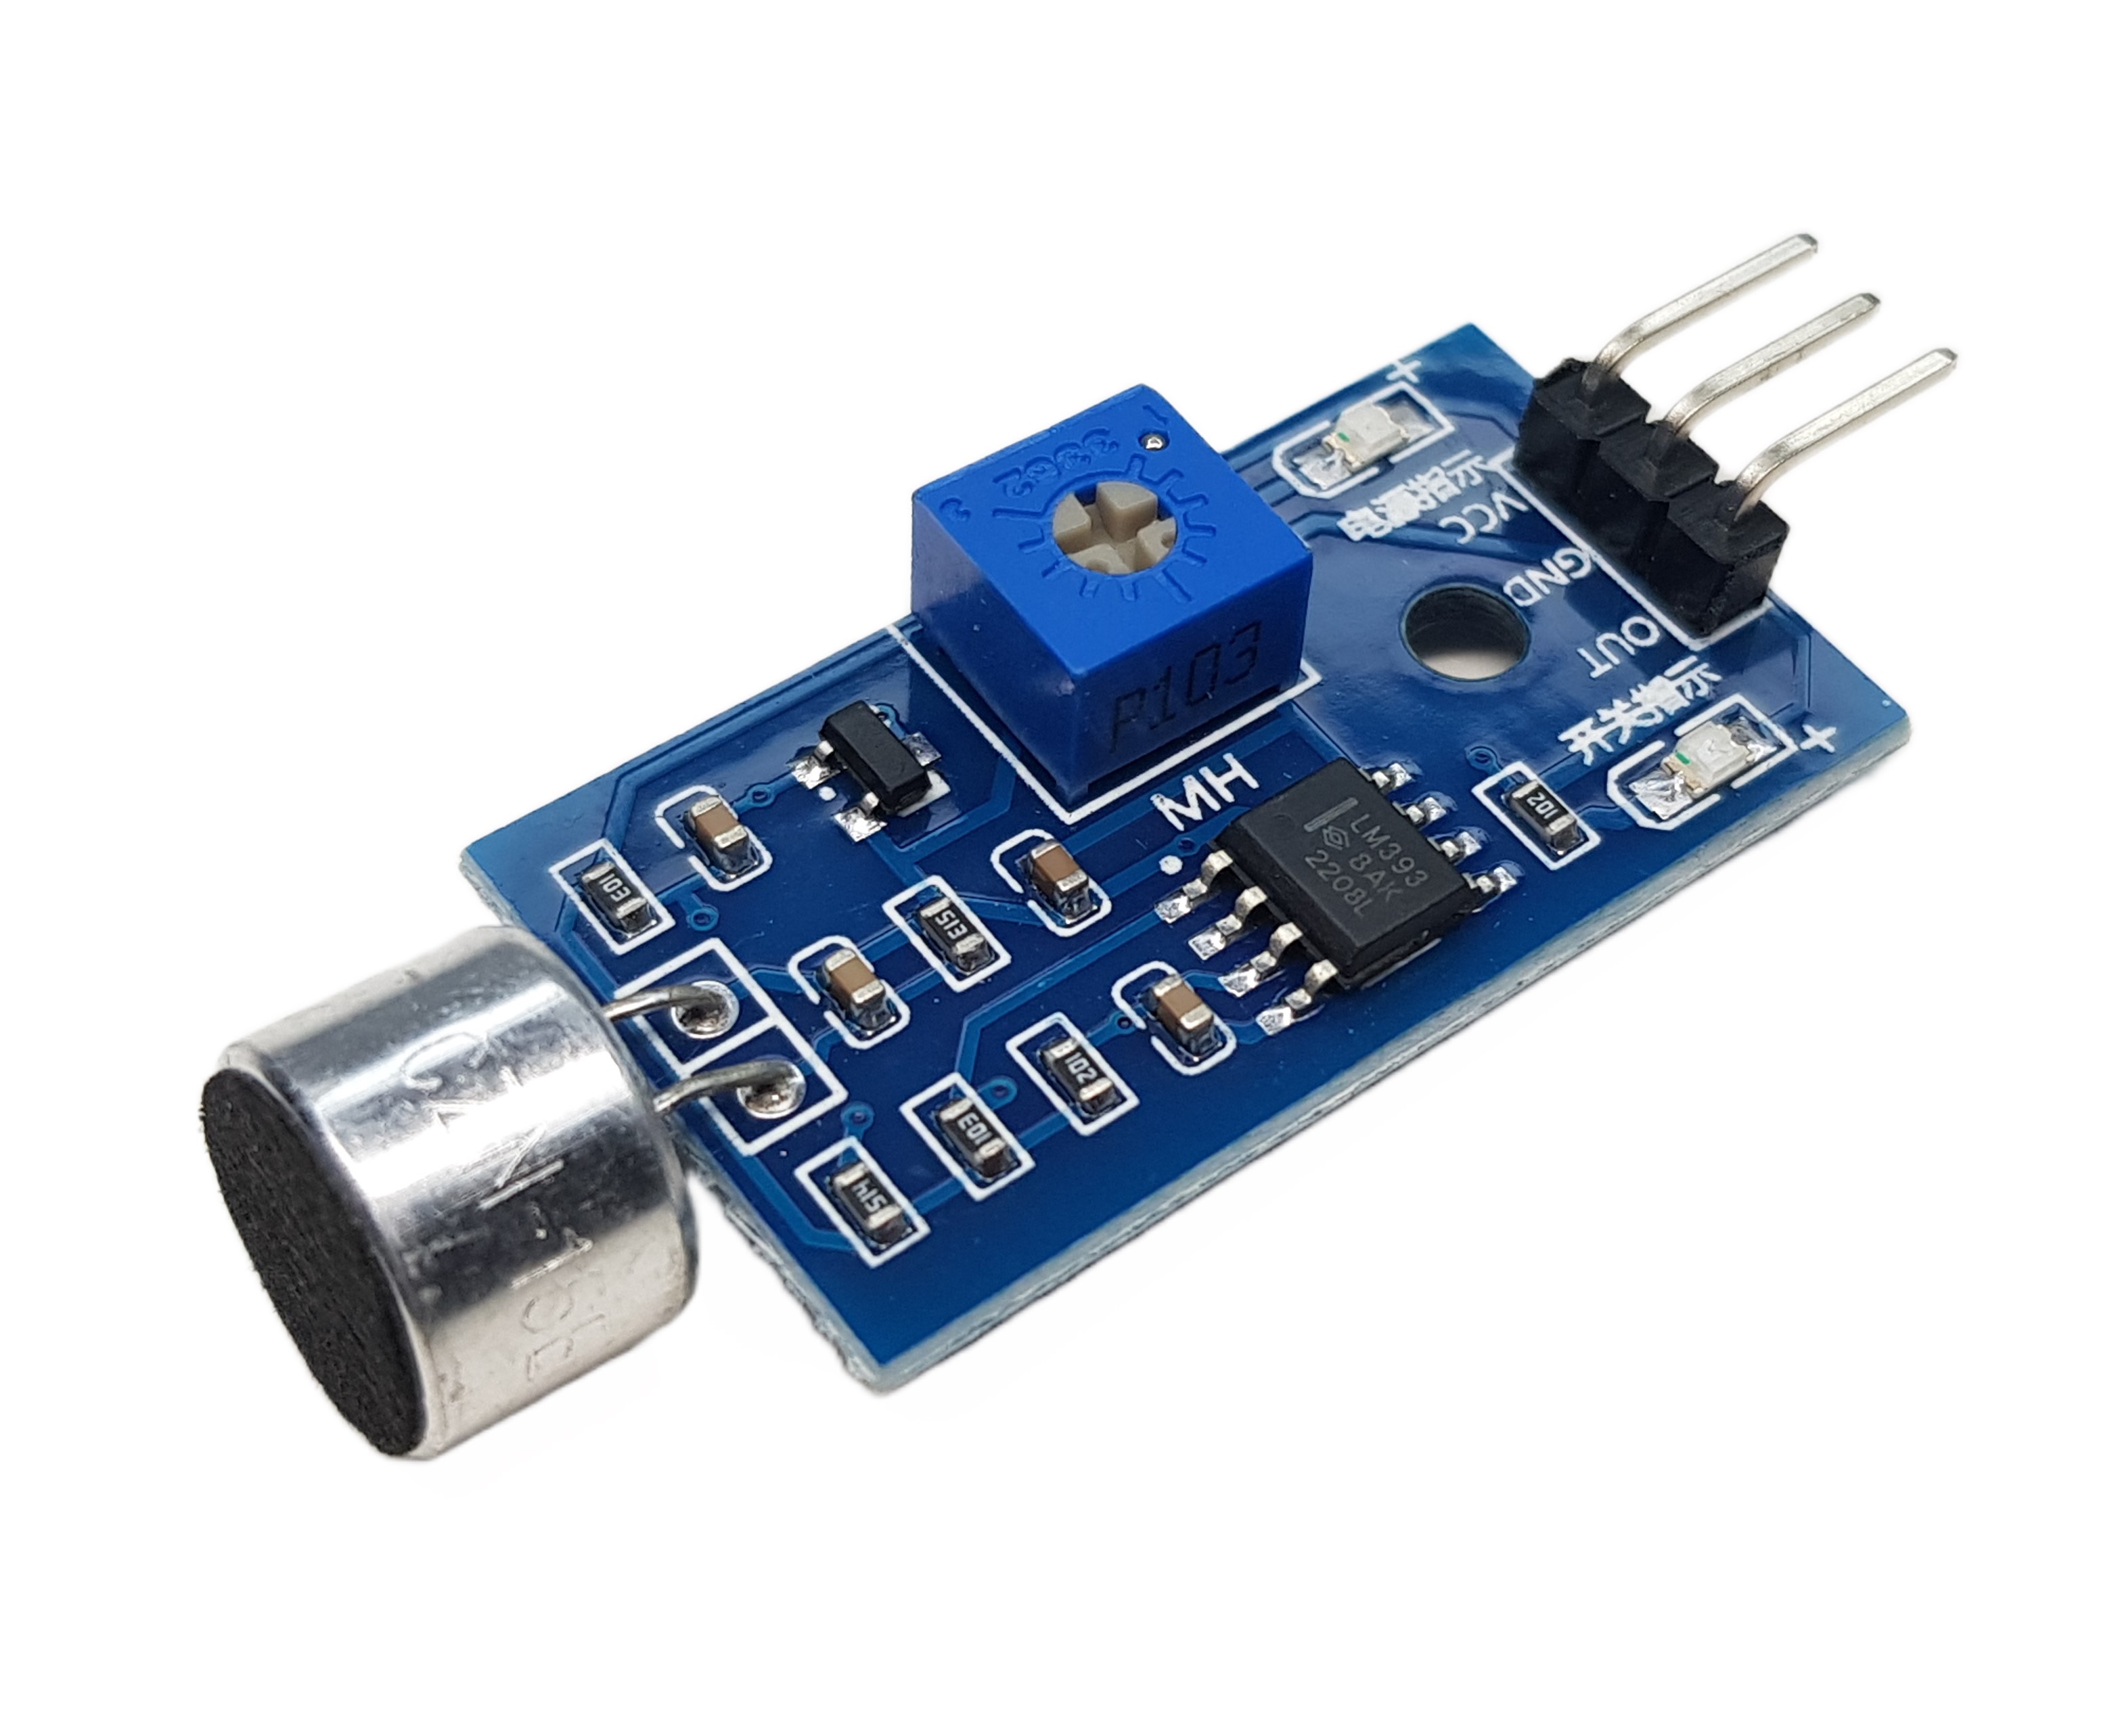 Sound Sensor Sound Detector for Arduino, ESP32, ESP8266, Raspberry Pi, 2 pieces